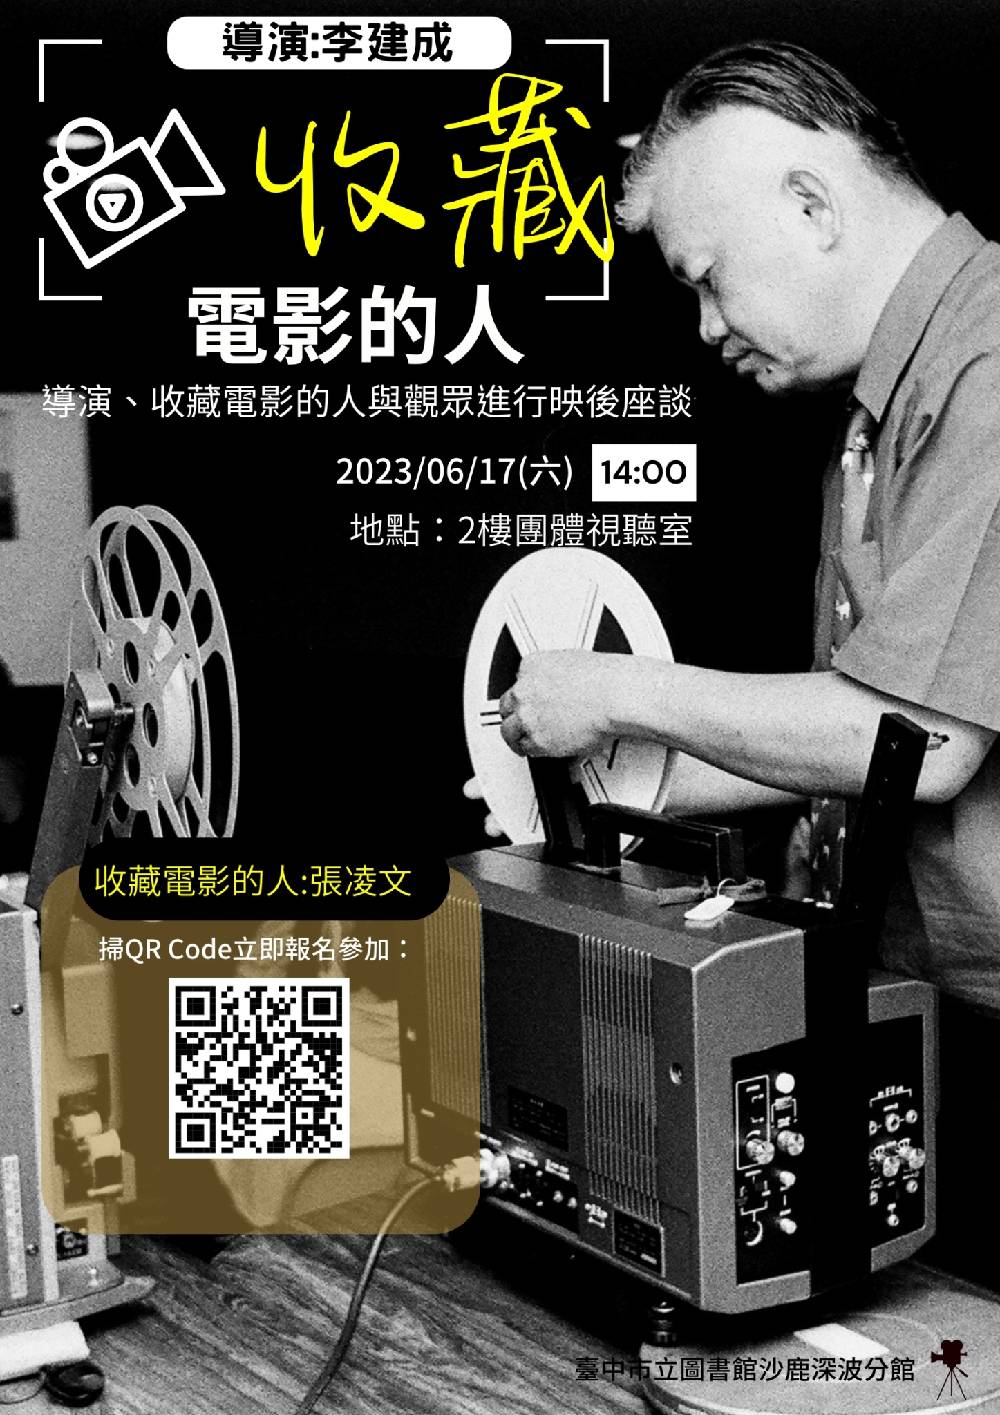 6月17日李建成導演與張凌文先生一同暢談紀錄片《收藏電影的人》